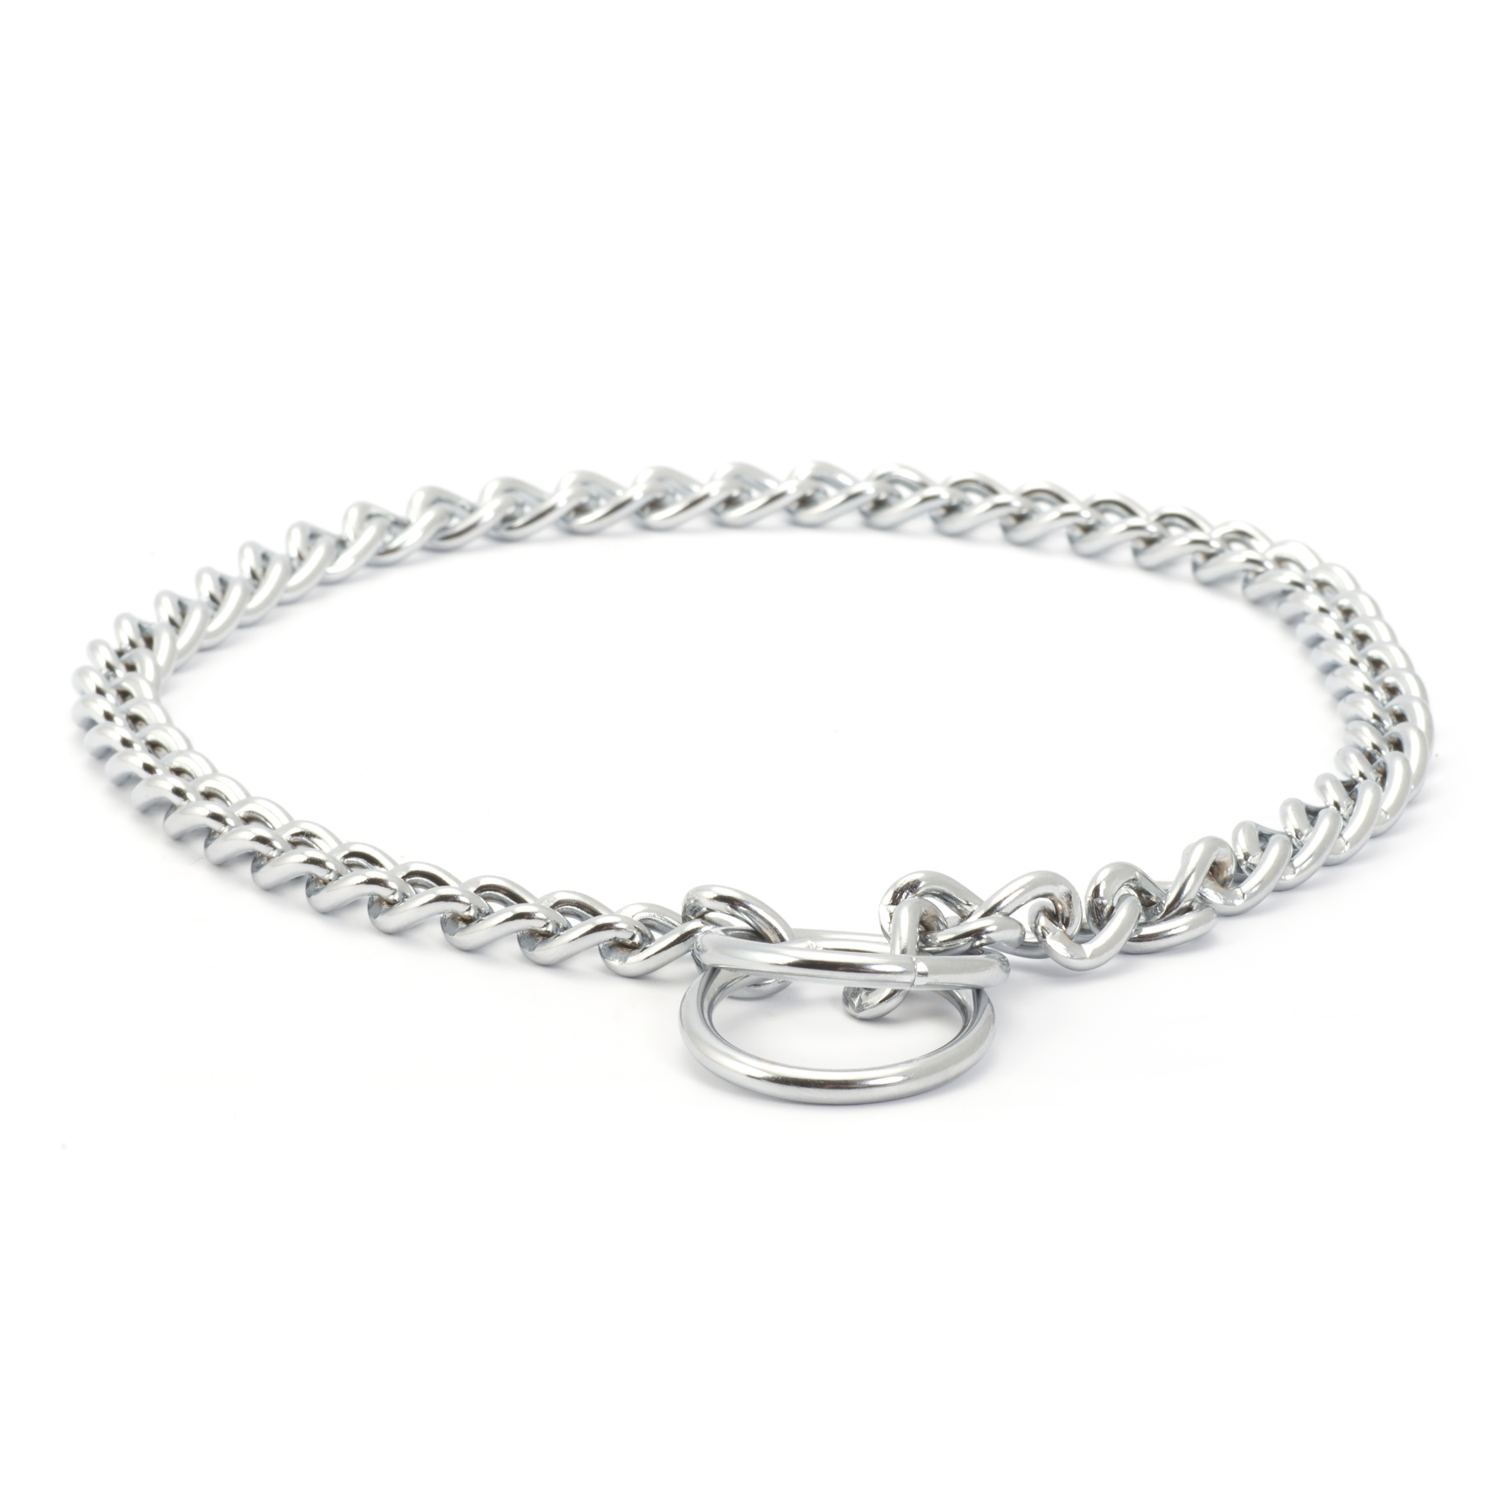 Ancol Check Chain Dog Collar - Silver / 65cm Image